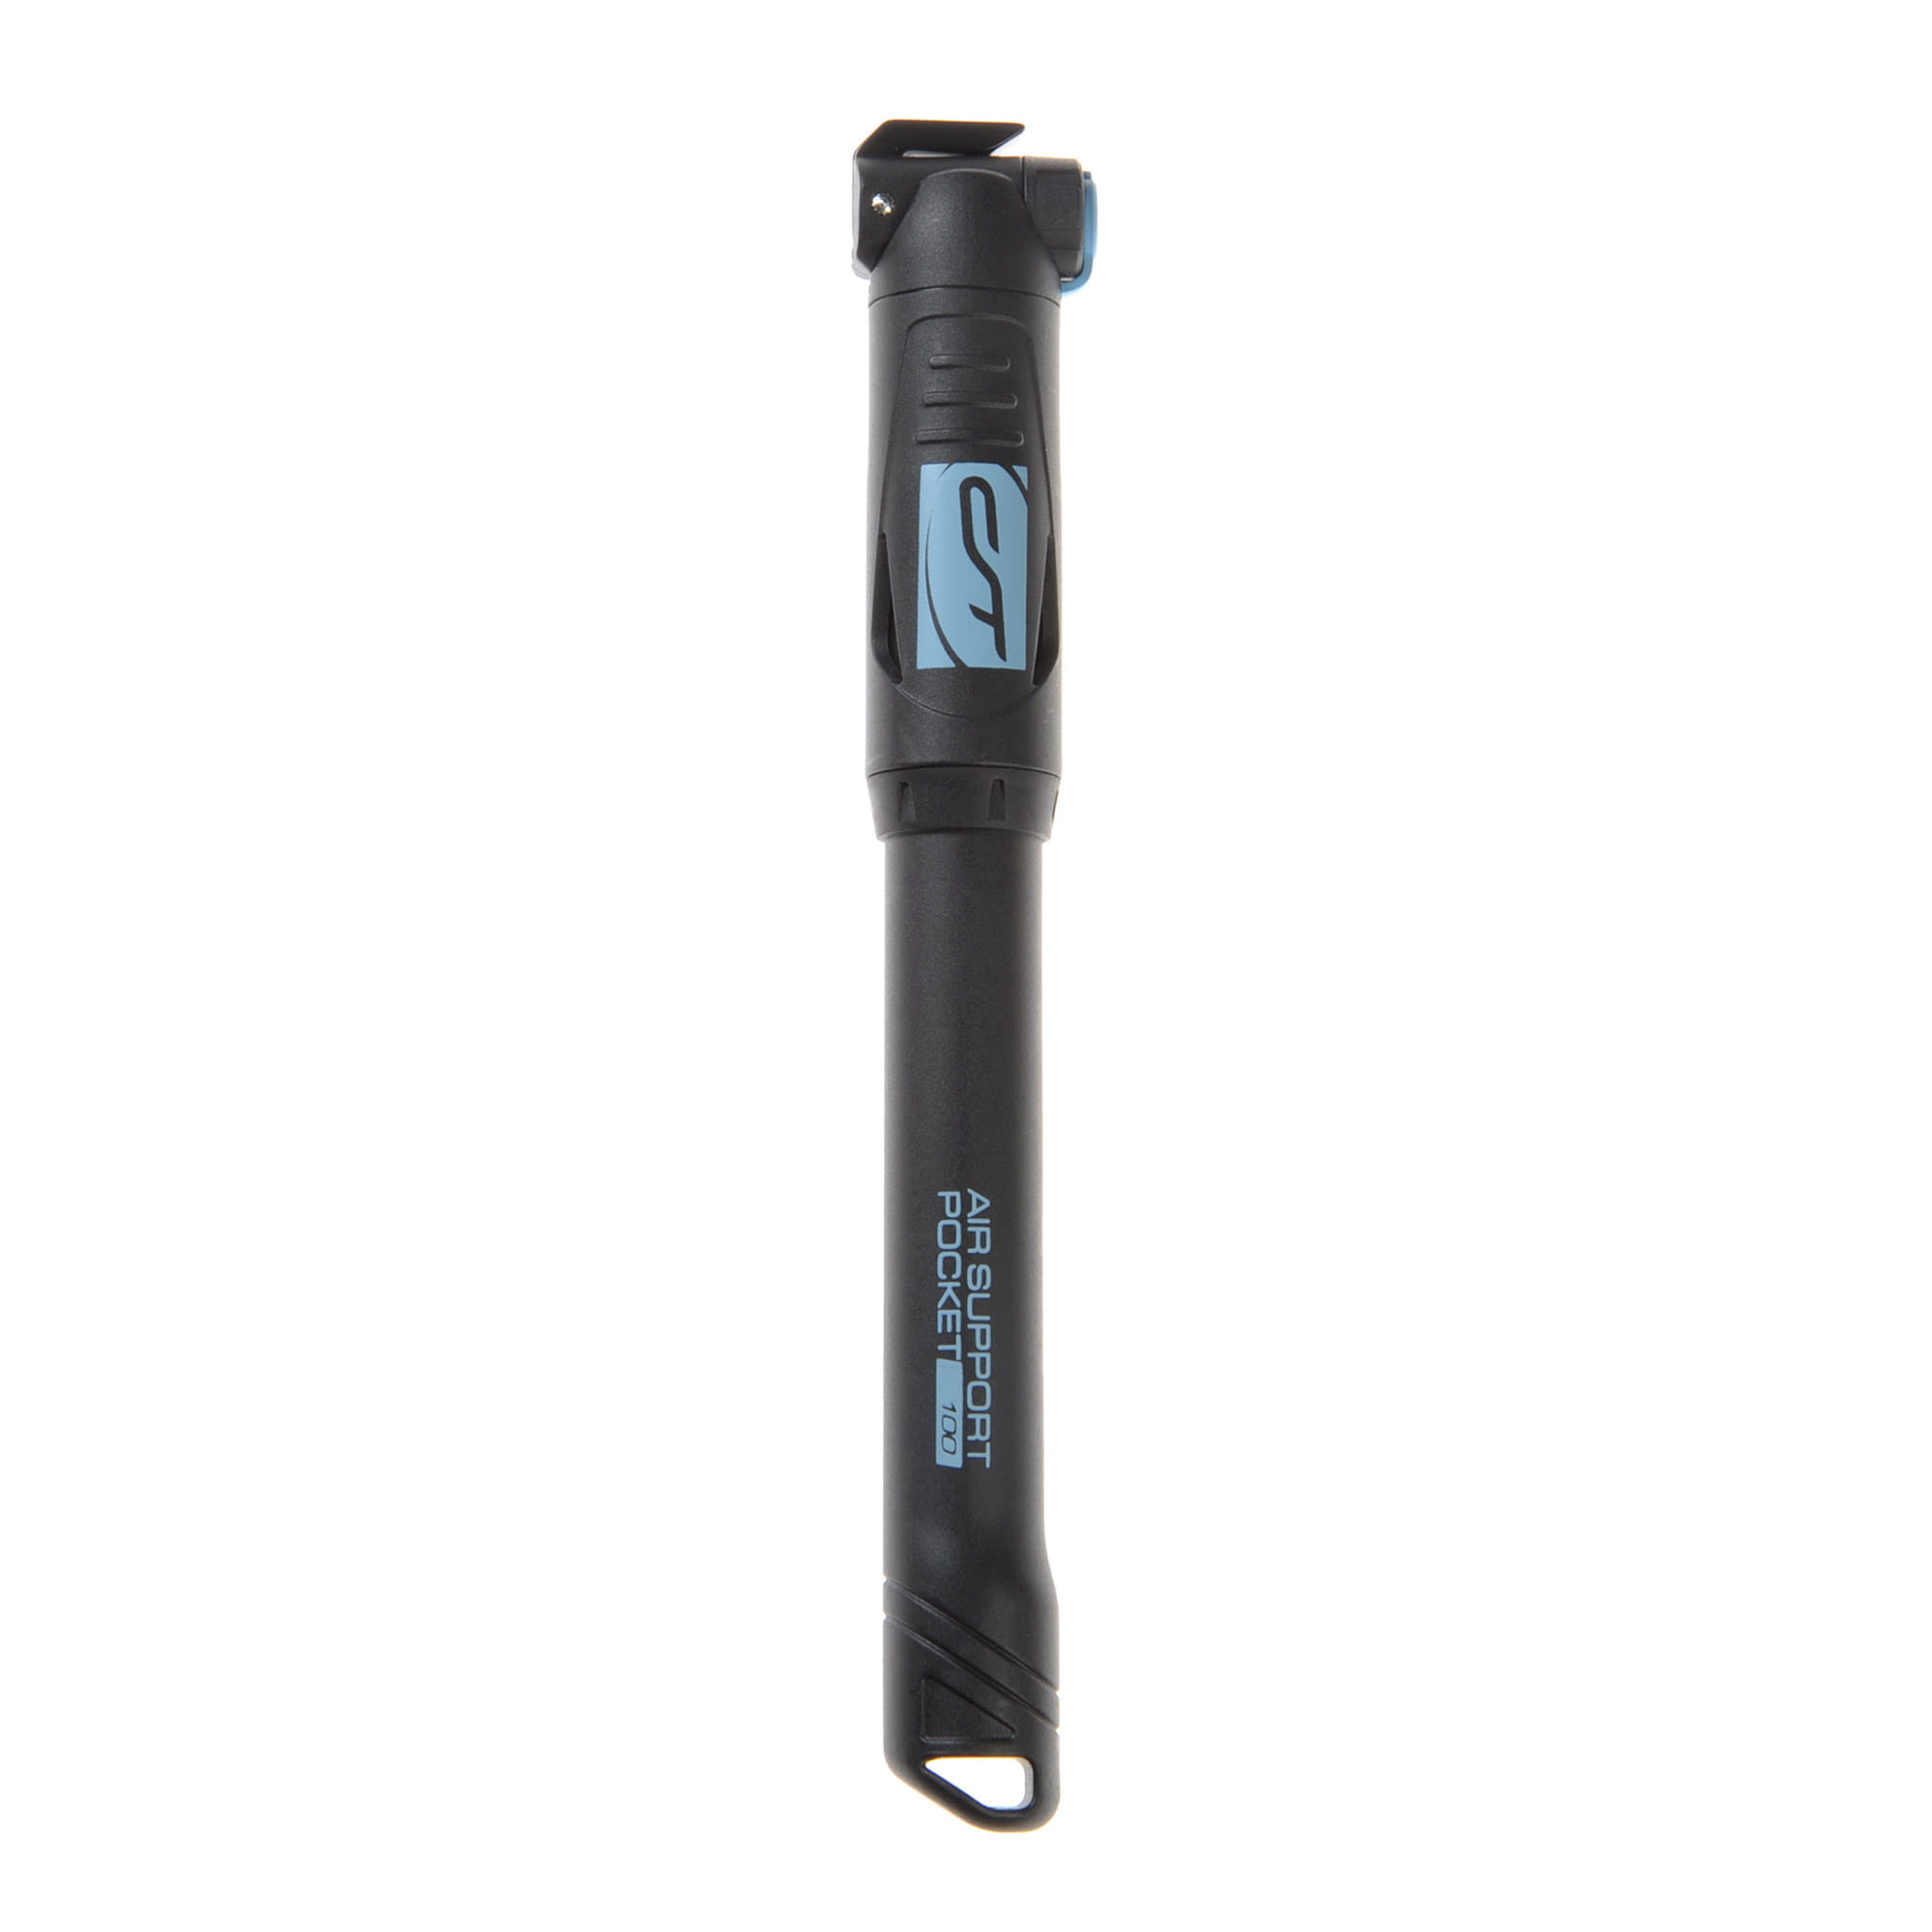 Contec Air Support Pocket Neo 100 Mini Fahrradpumpe 7 bar